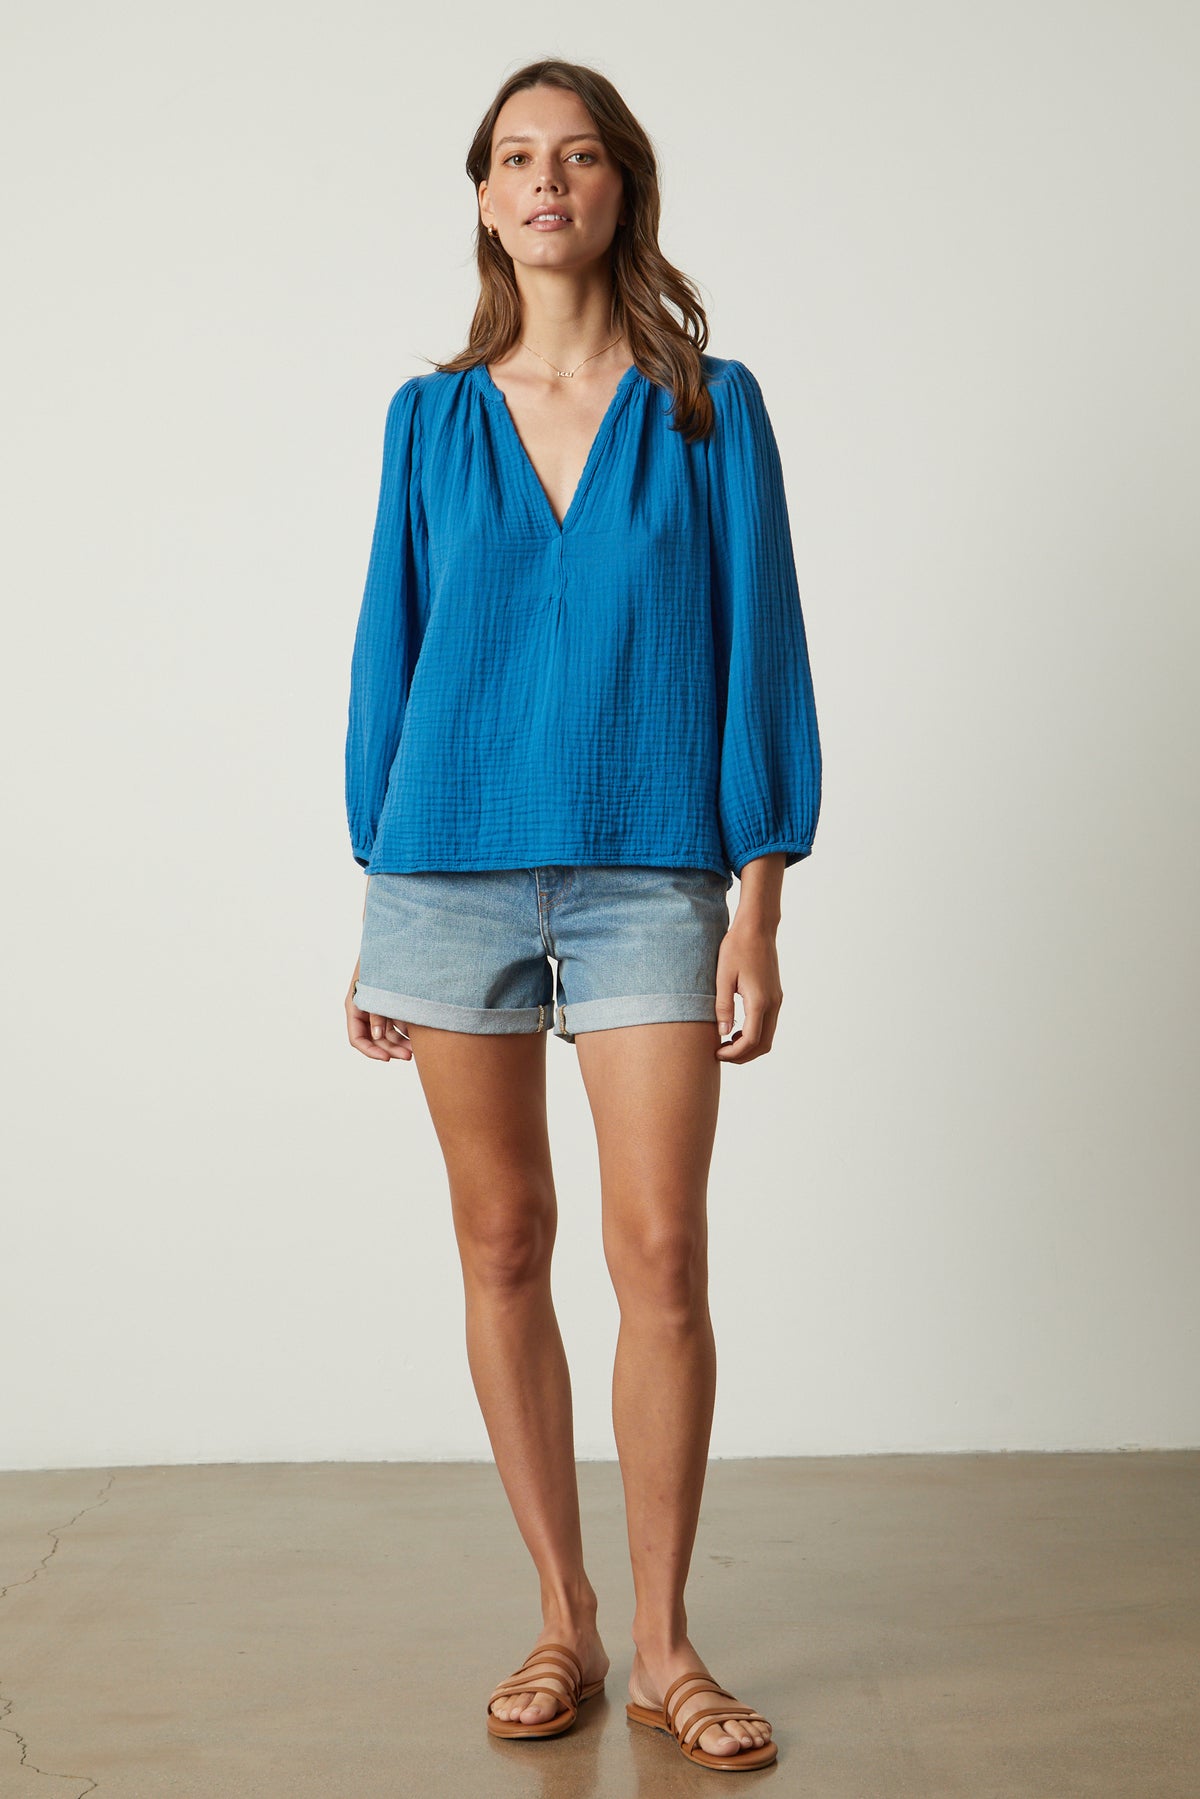   the model is wearing Velvet by Graham & Spencer denim shorts and a Velvet by Graham & Spencer blue blouse. 